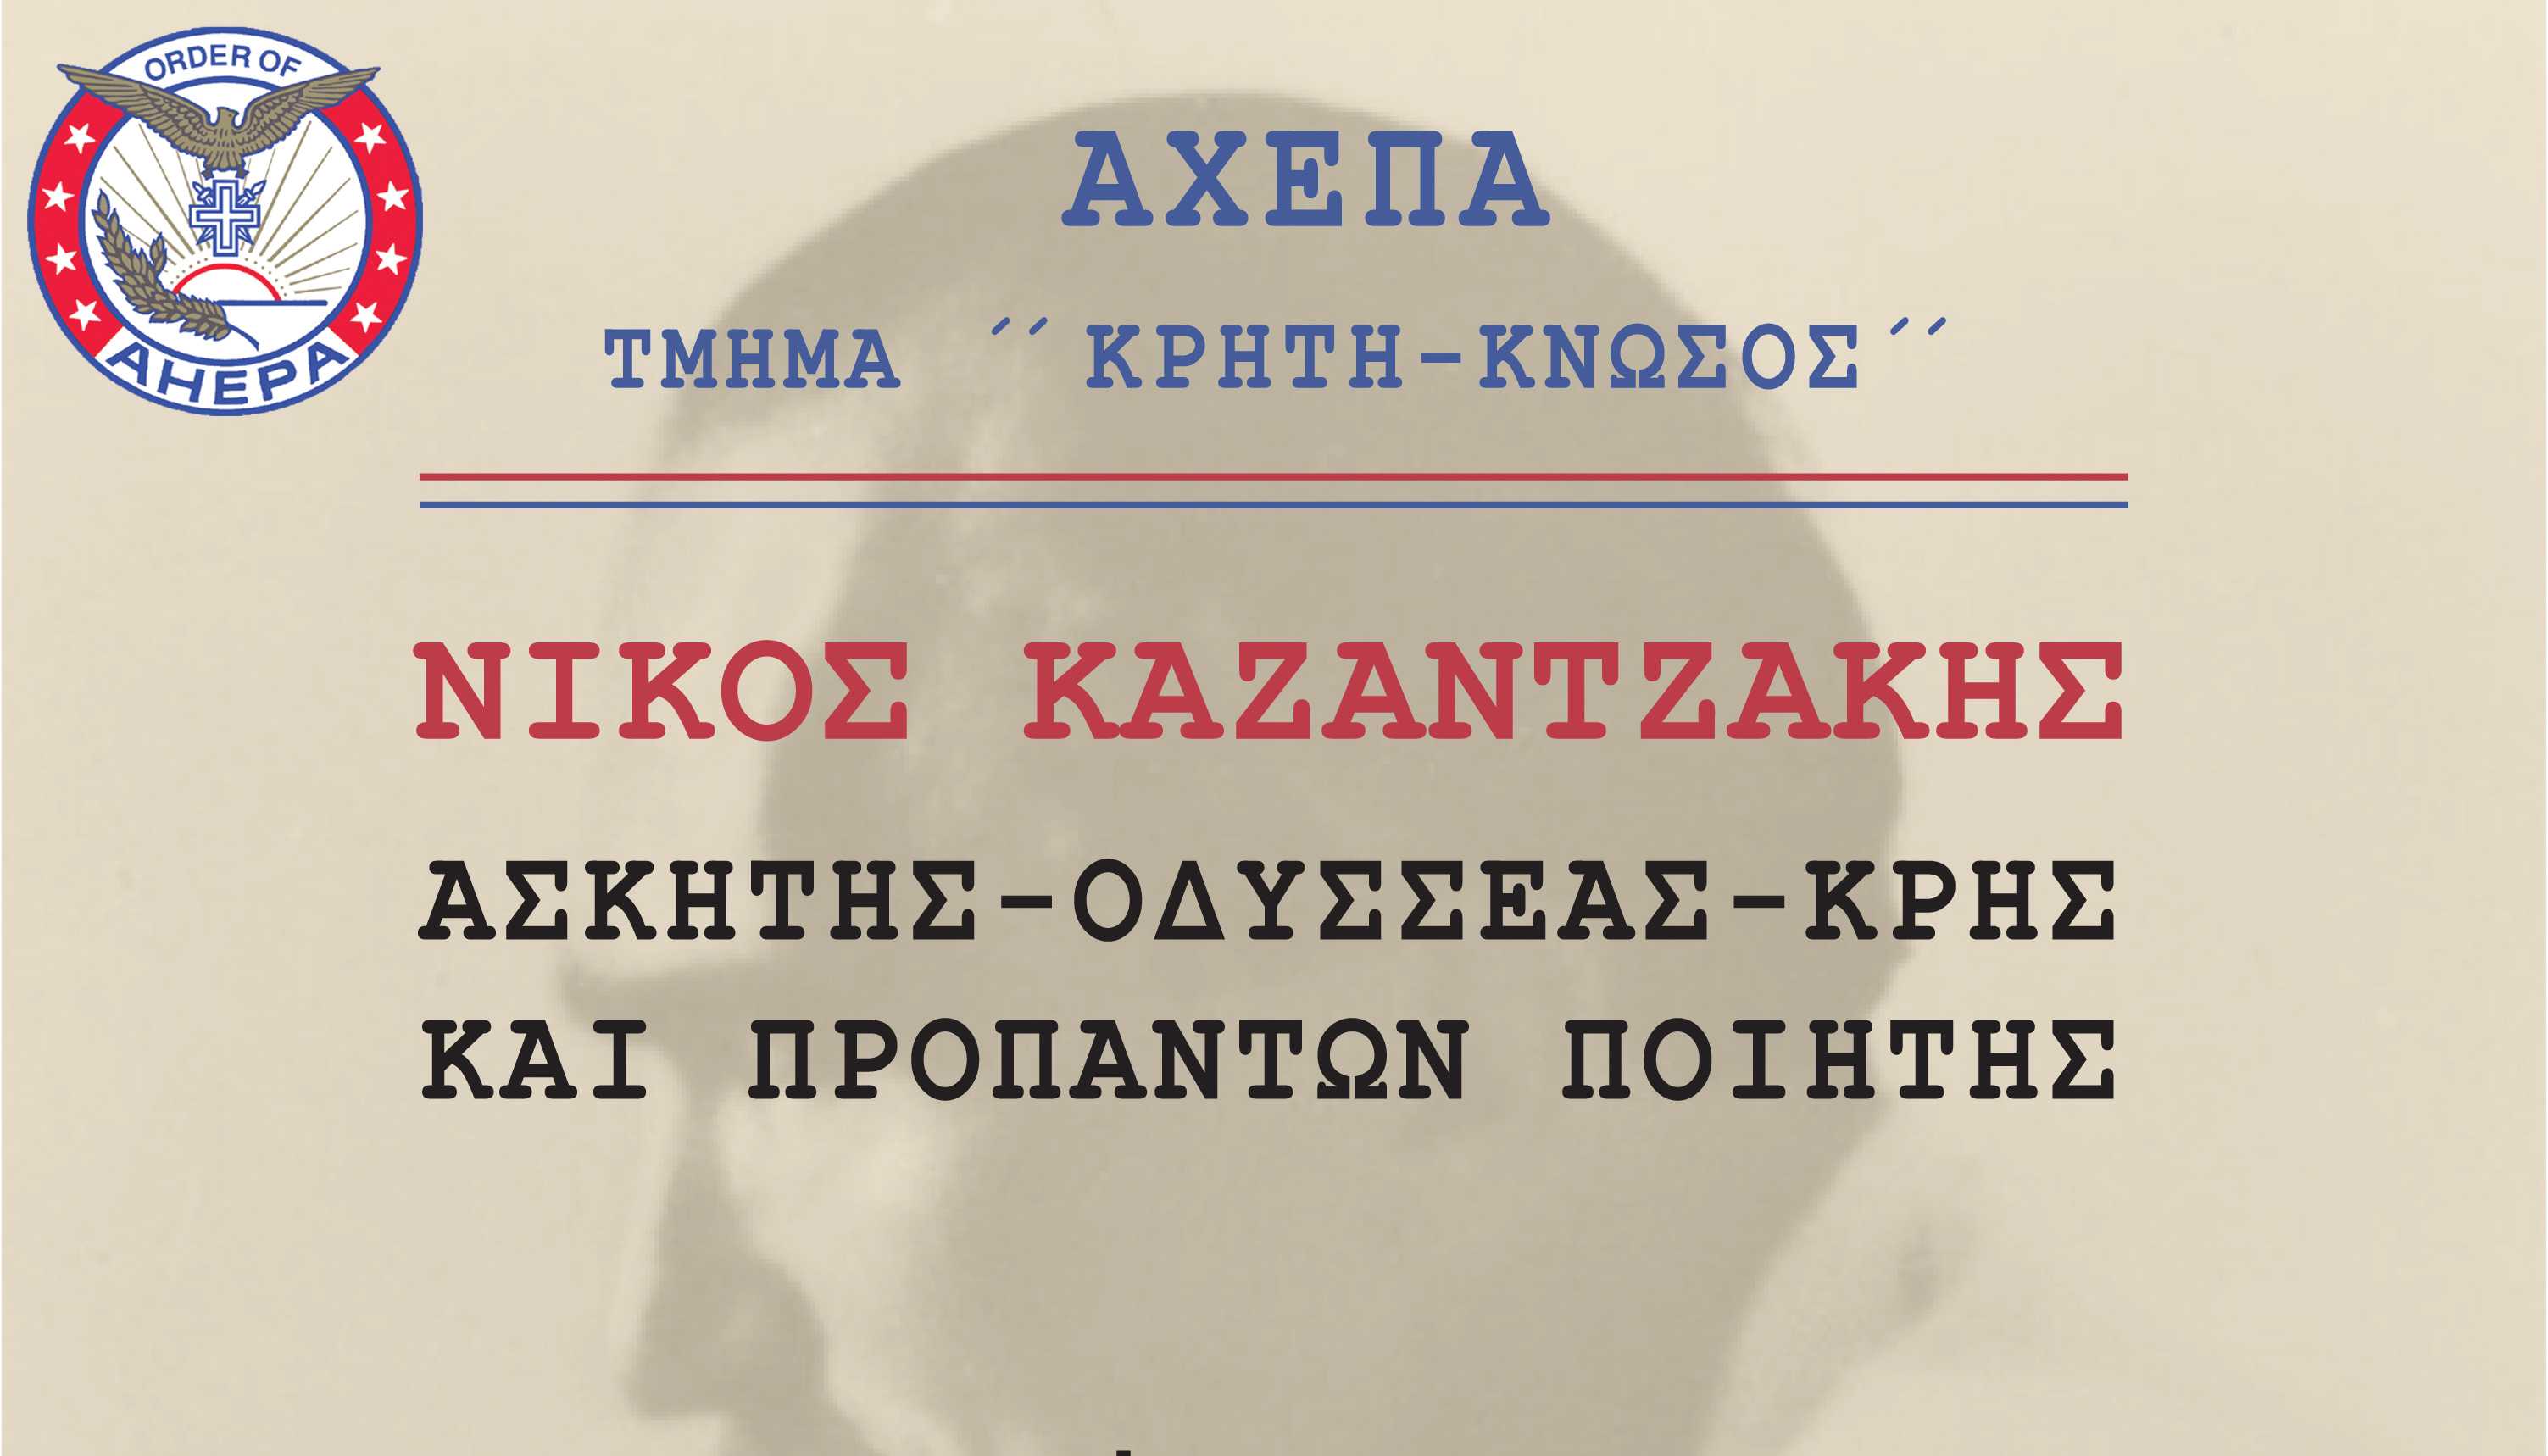 Εκδήλωση: “Ν. Καζαντζάκης: Ασκητής – Οδυσσέας – Κρης και προπάντων Ποιητής”